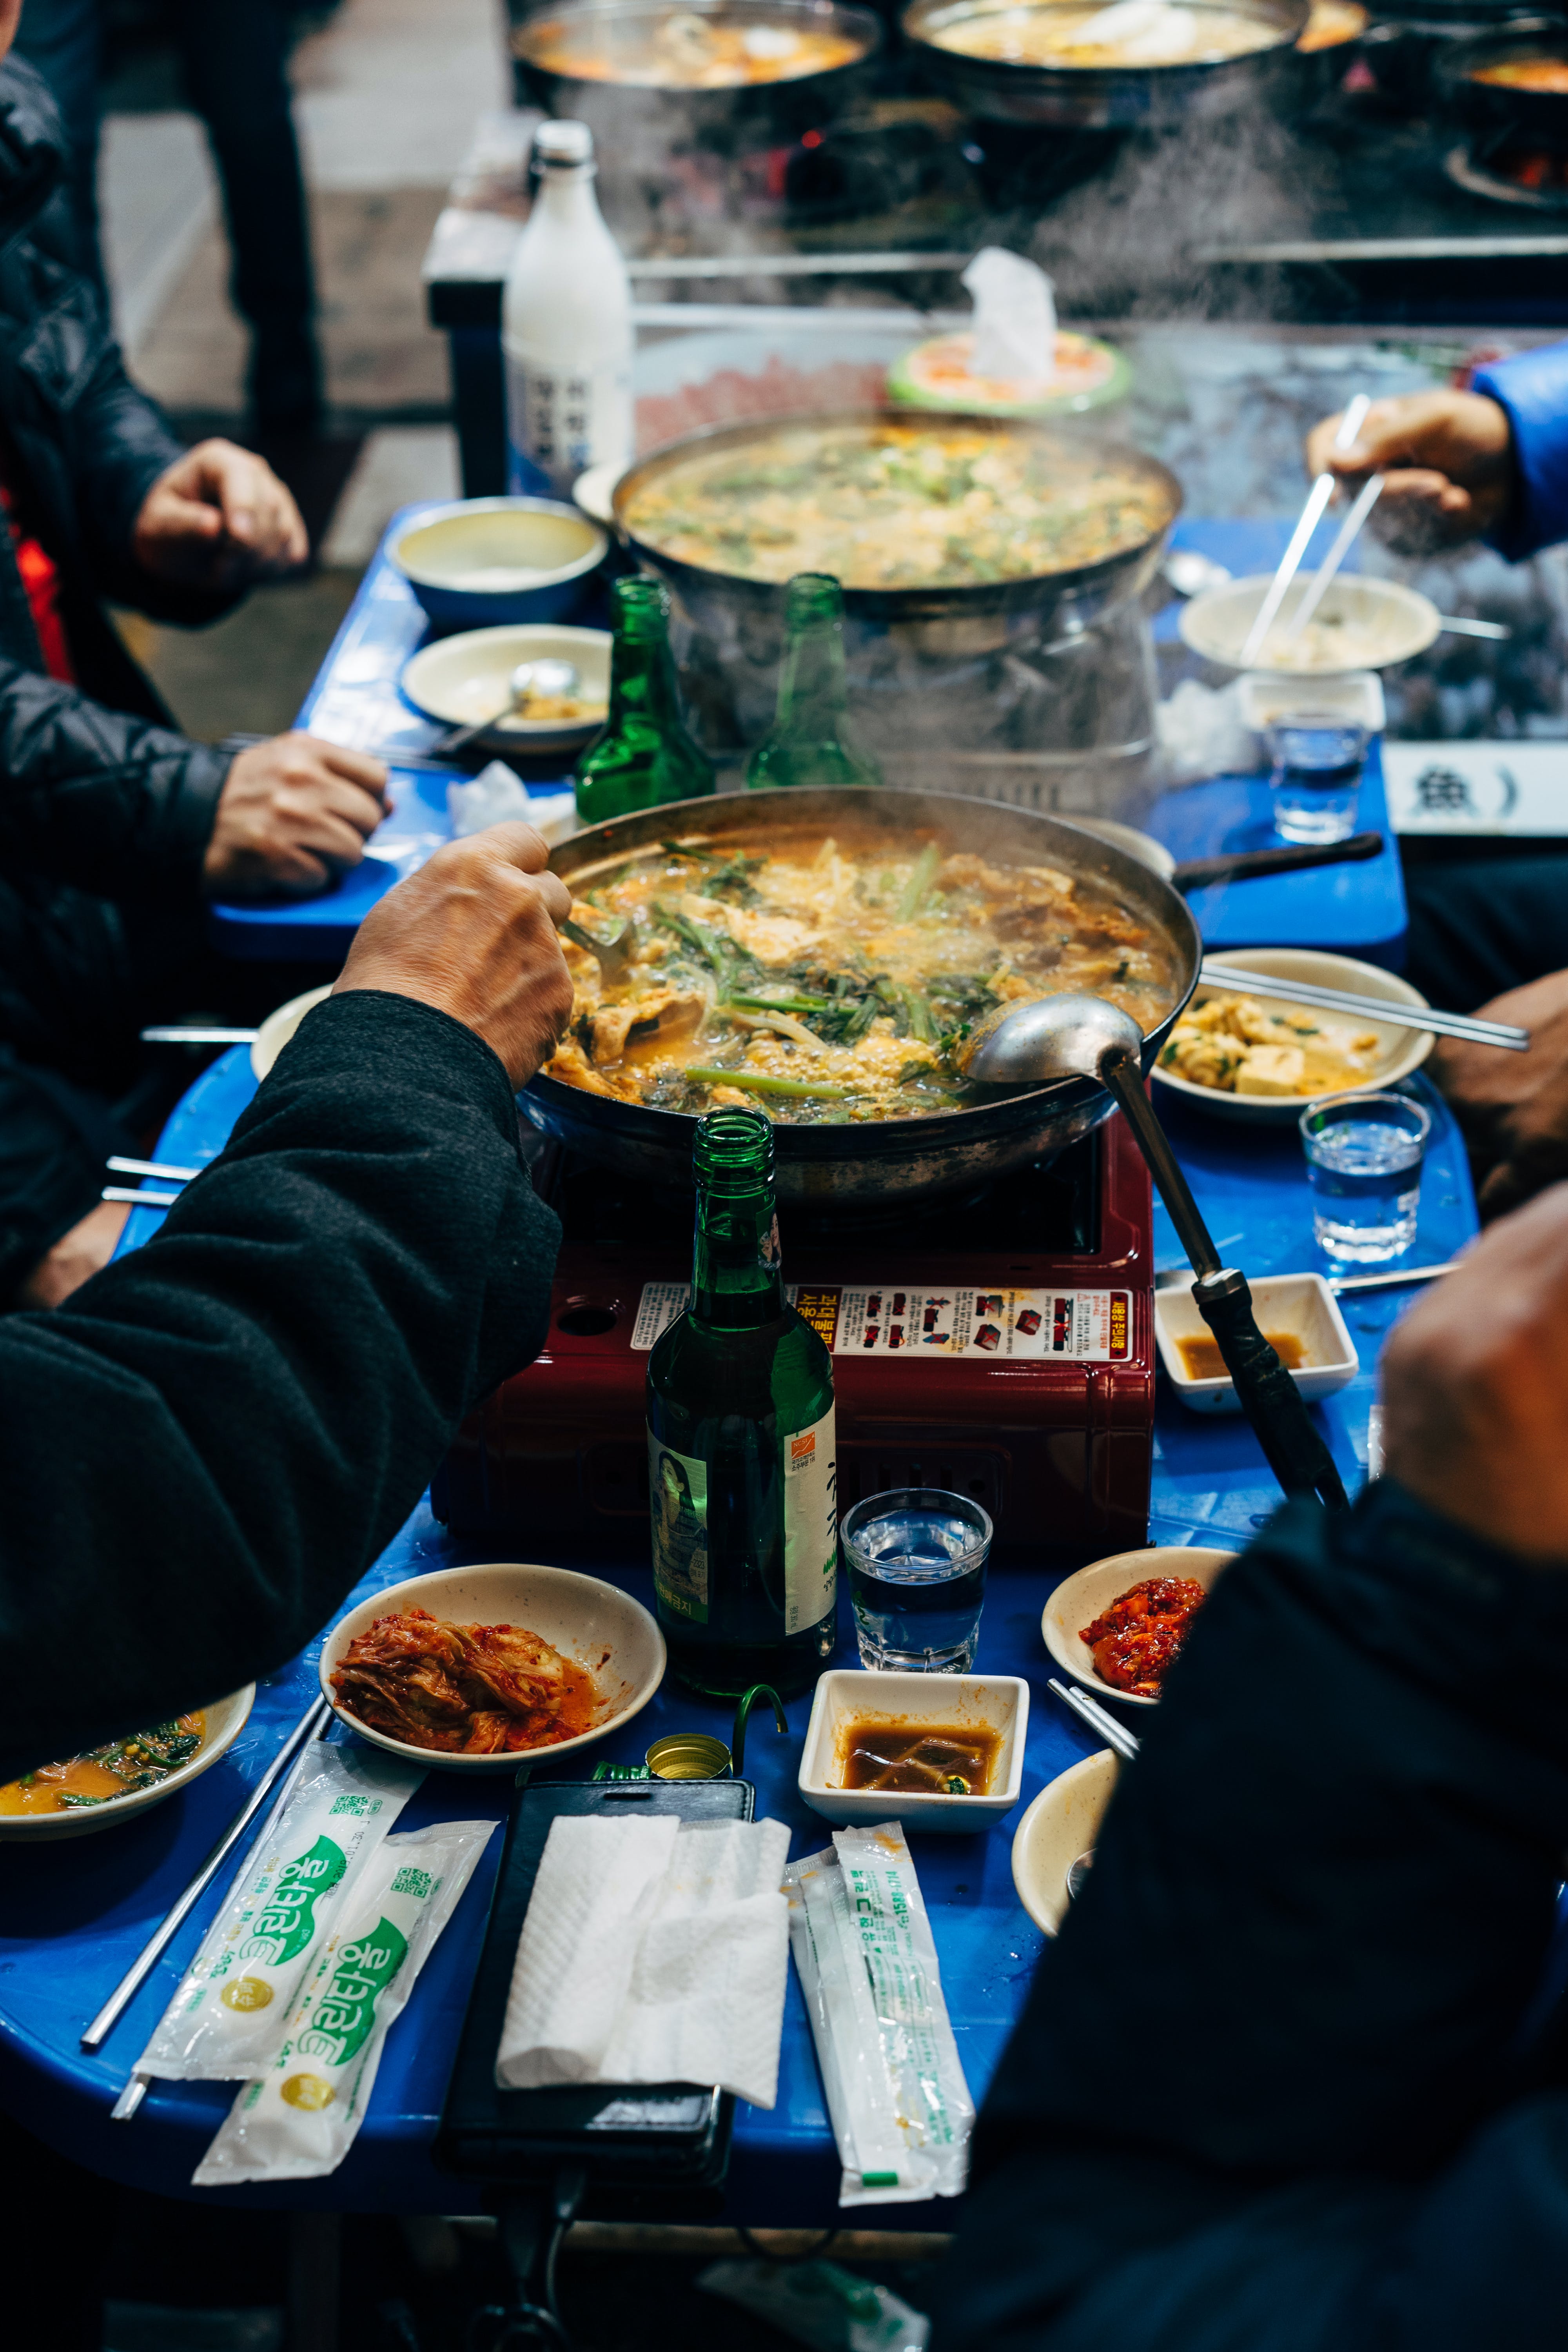 Un groupe de personnes profitant d'un repas ensemble | Source : Pexels